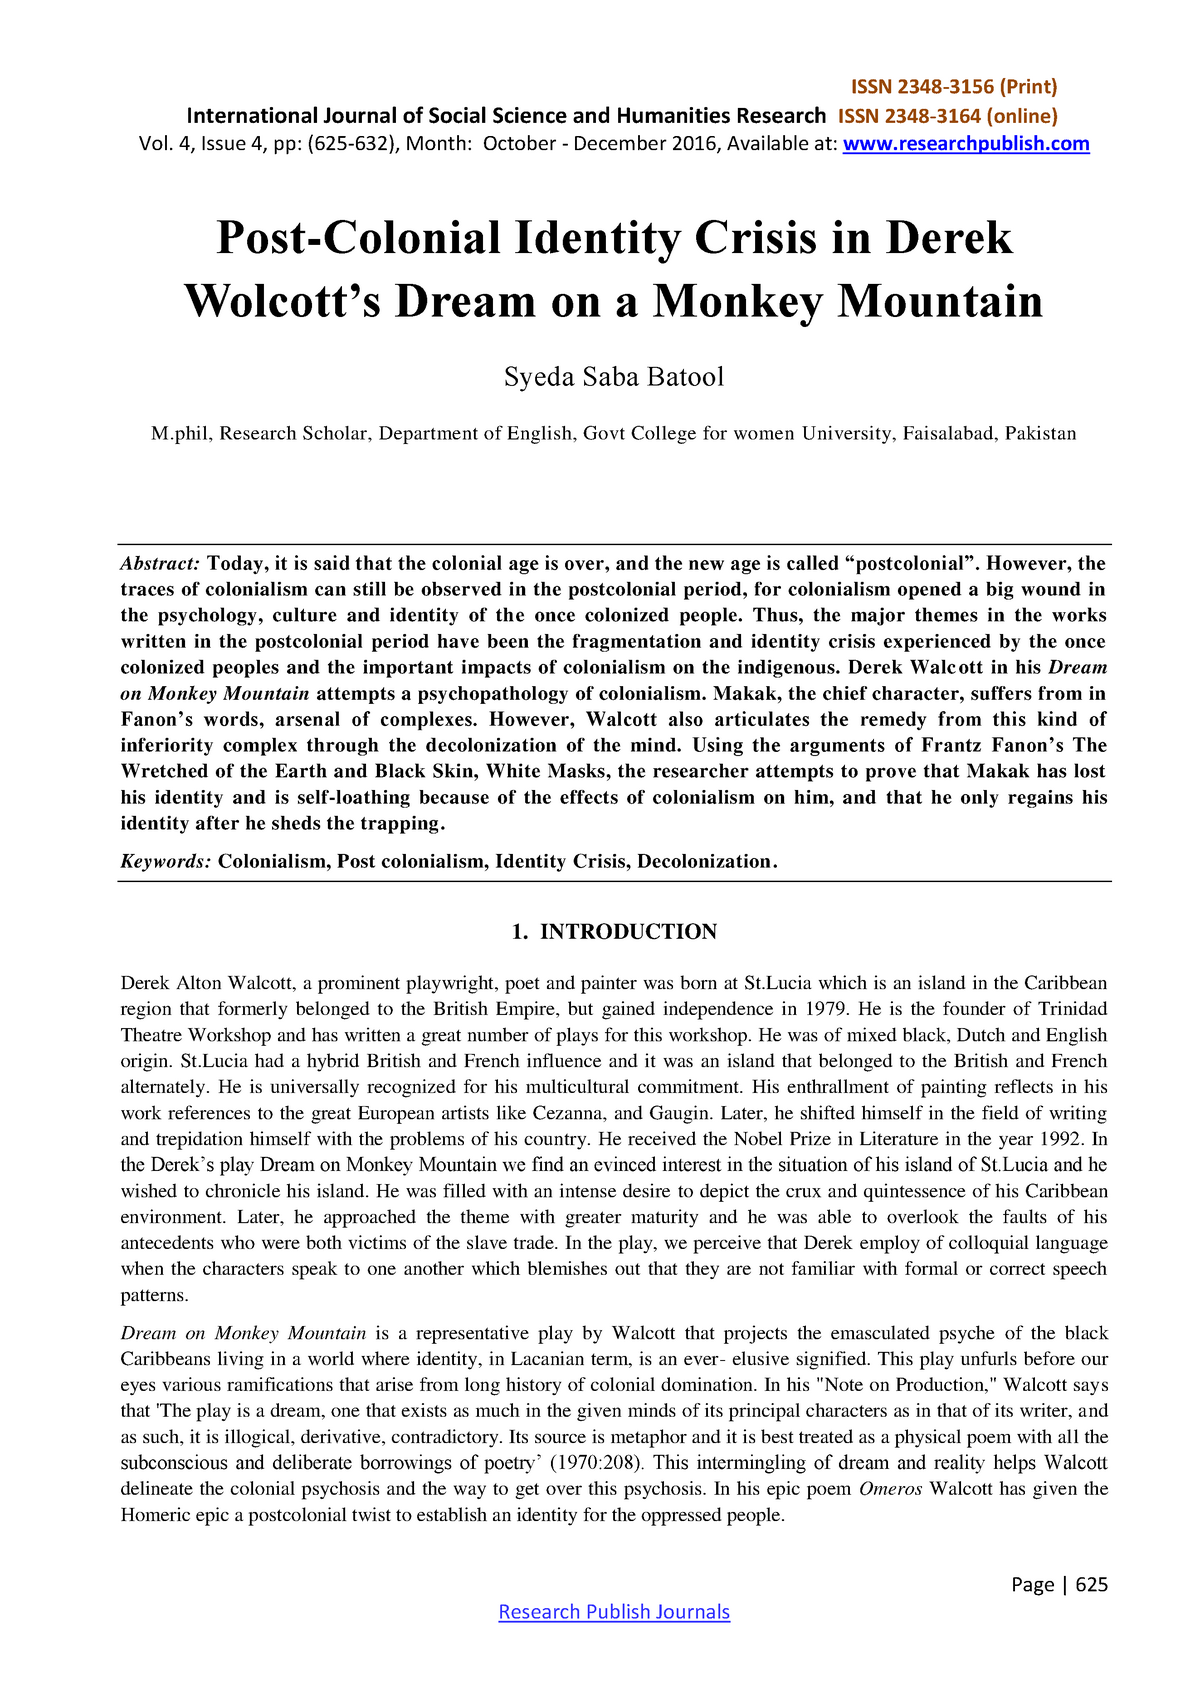 dream on monkey mountain